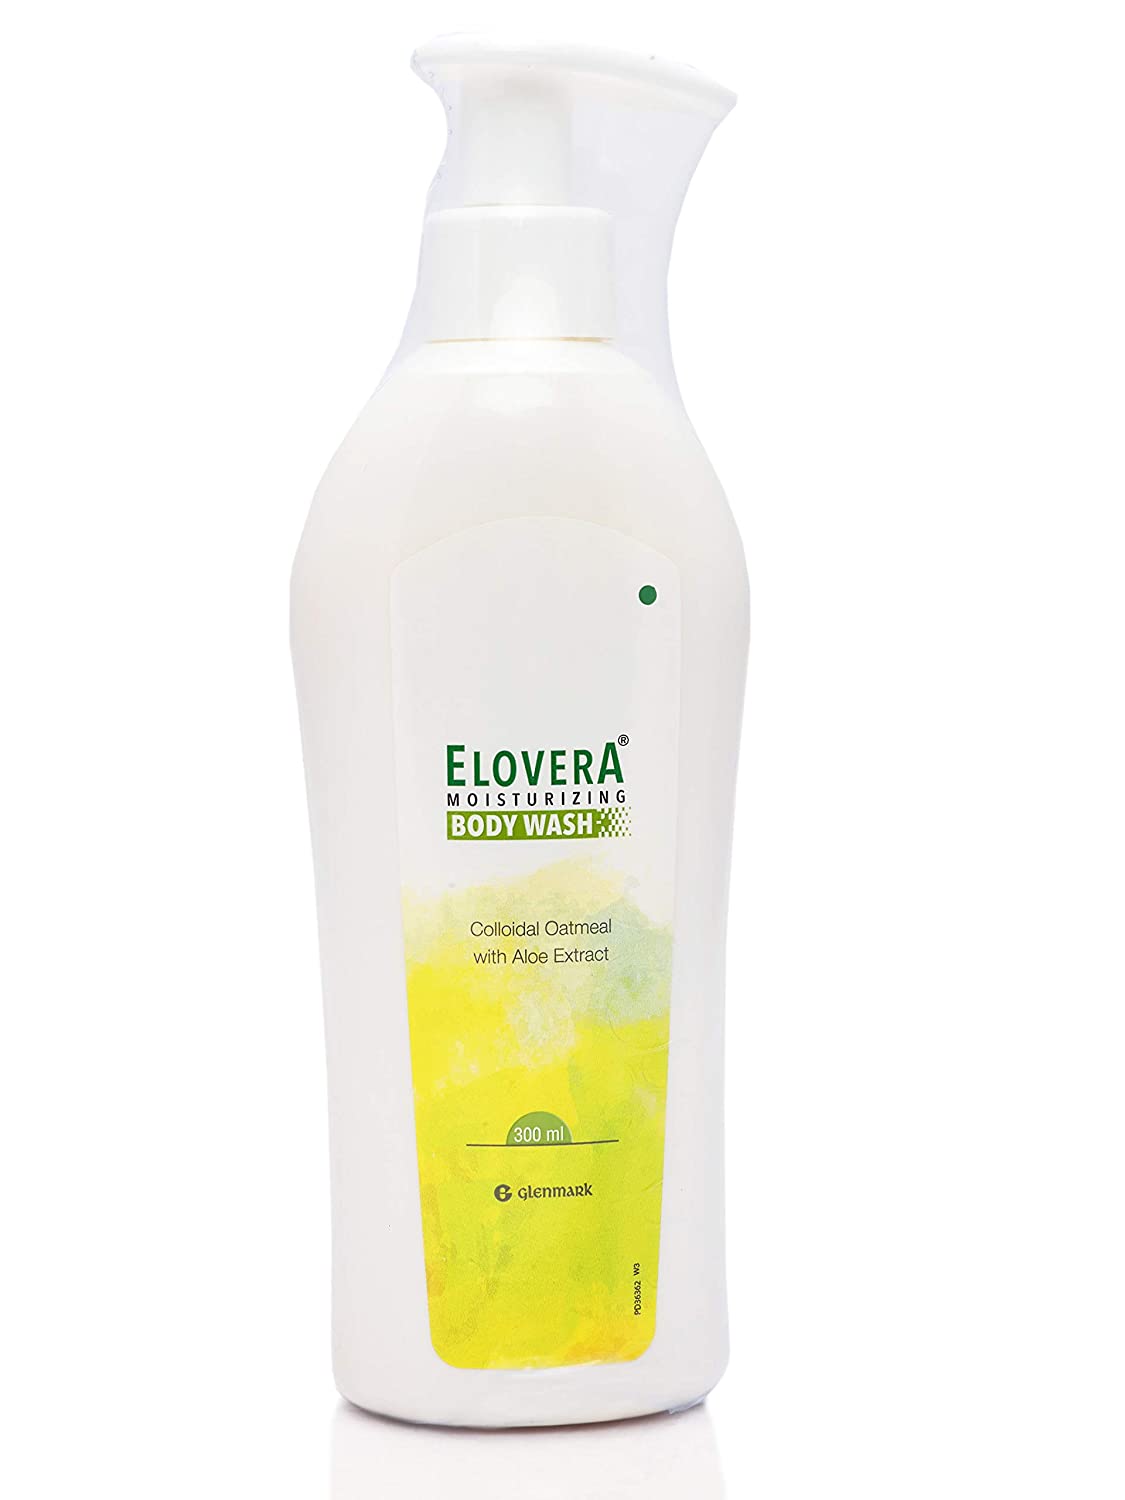 Elovera Moisturizing Body Wash, 300 ml, Pack of 1 Liquid